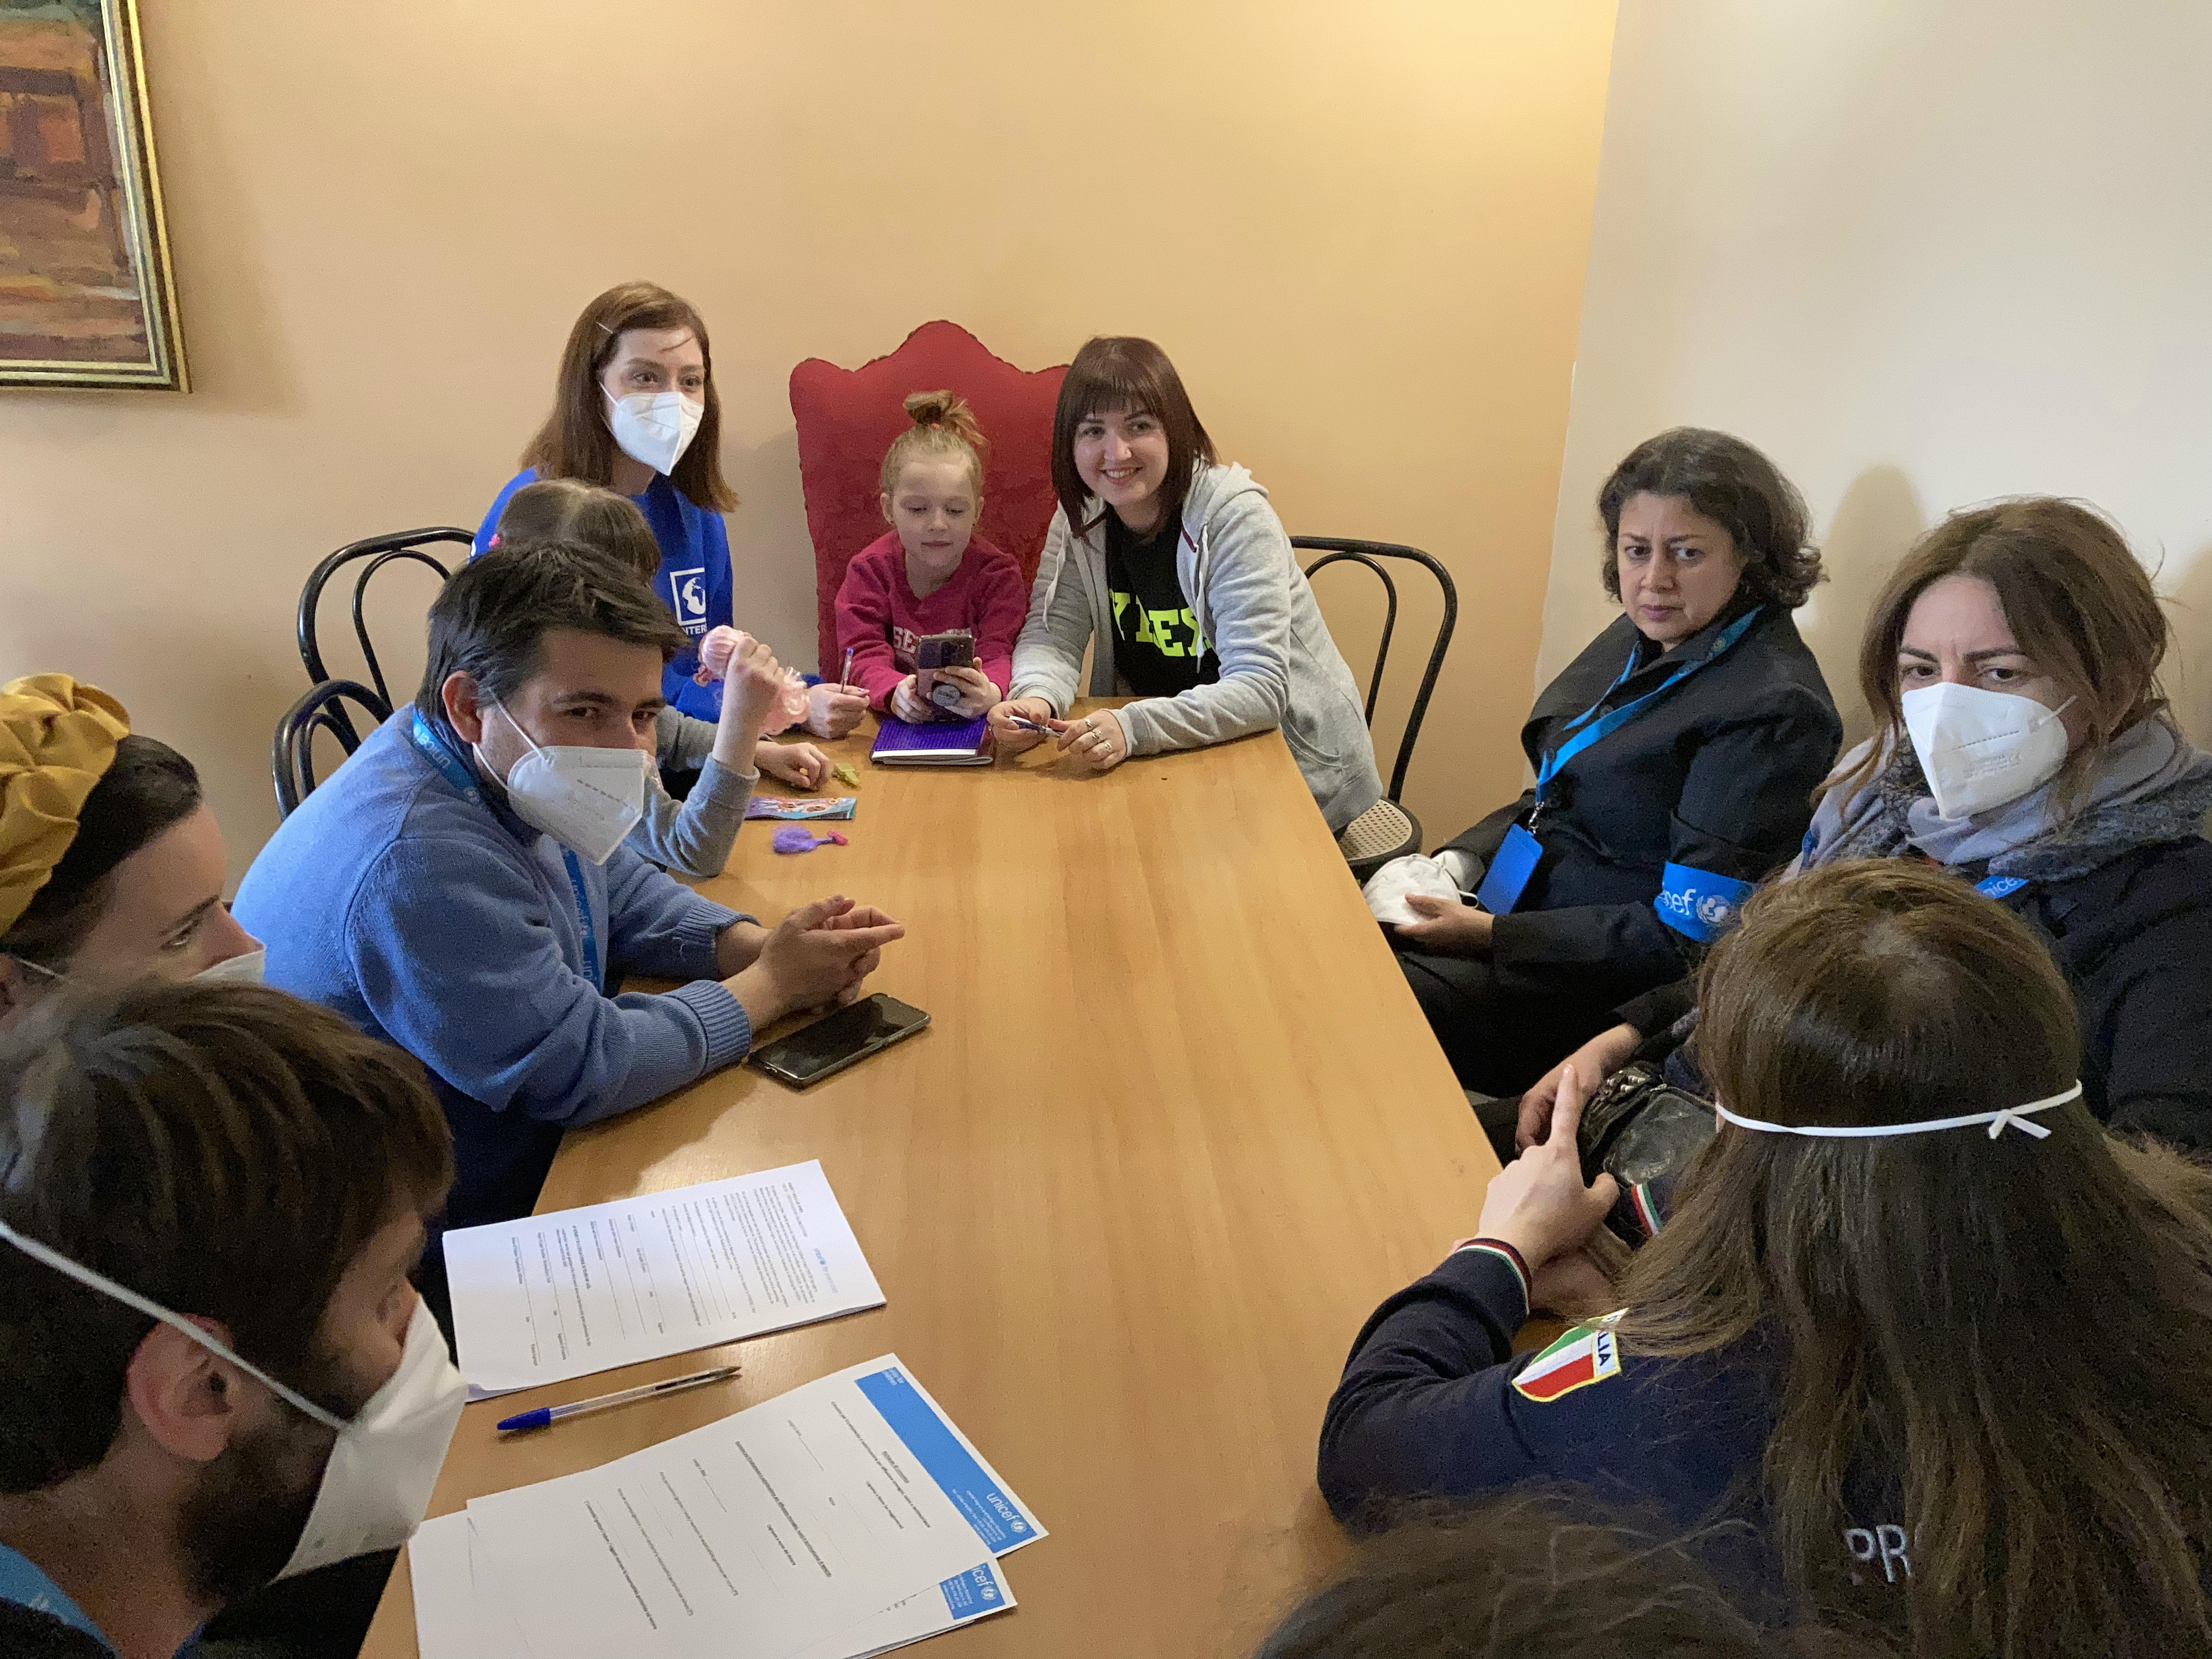 Incontro tra la Direttrice Regione e una famiglia di rifugiati Ucraini in un centro supportato da UNICEF e INTERSOS in collaborazione con la Protezione Civile